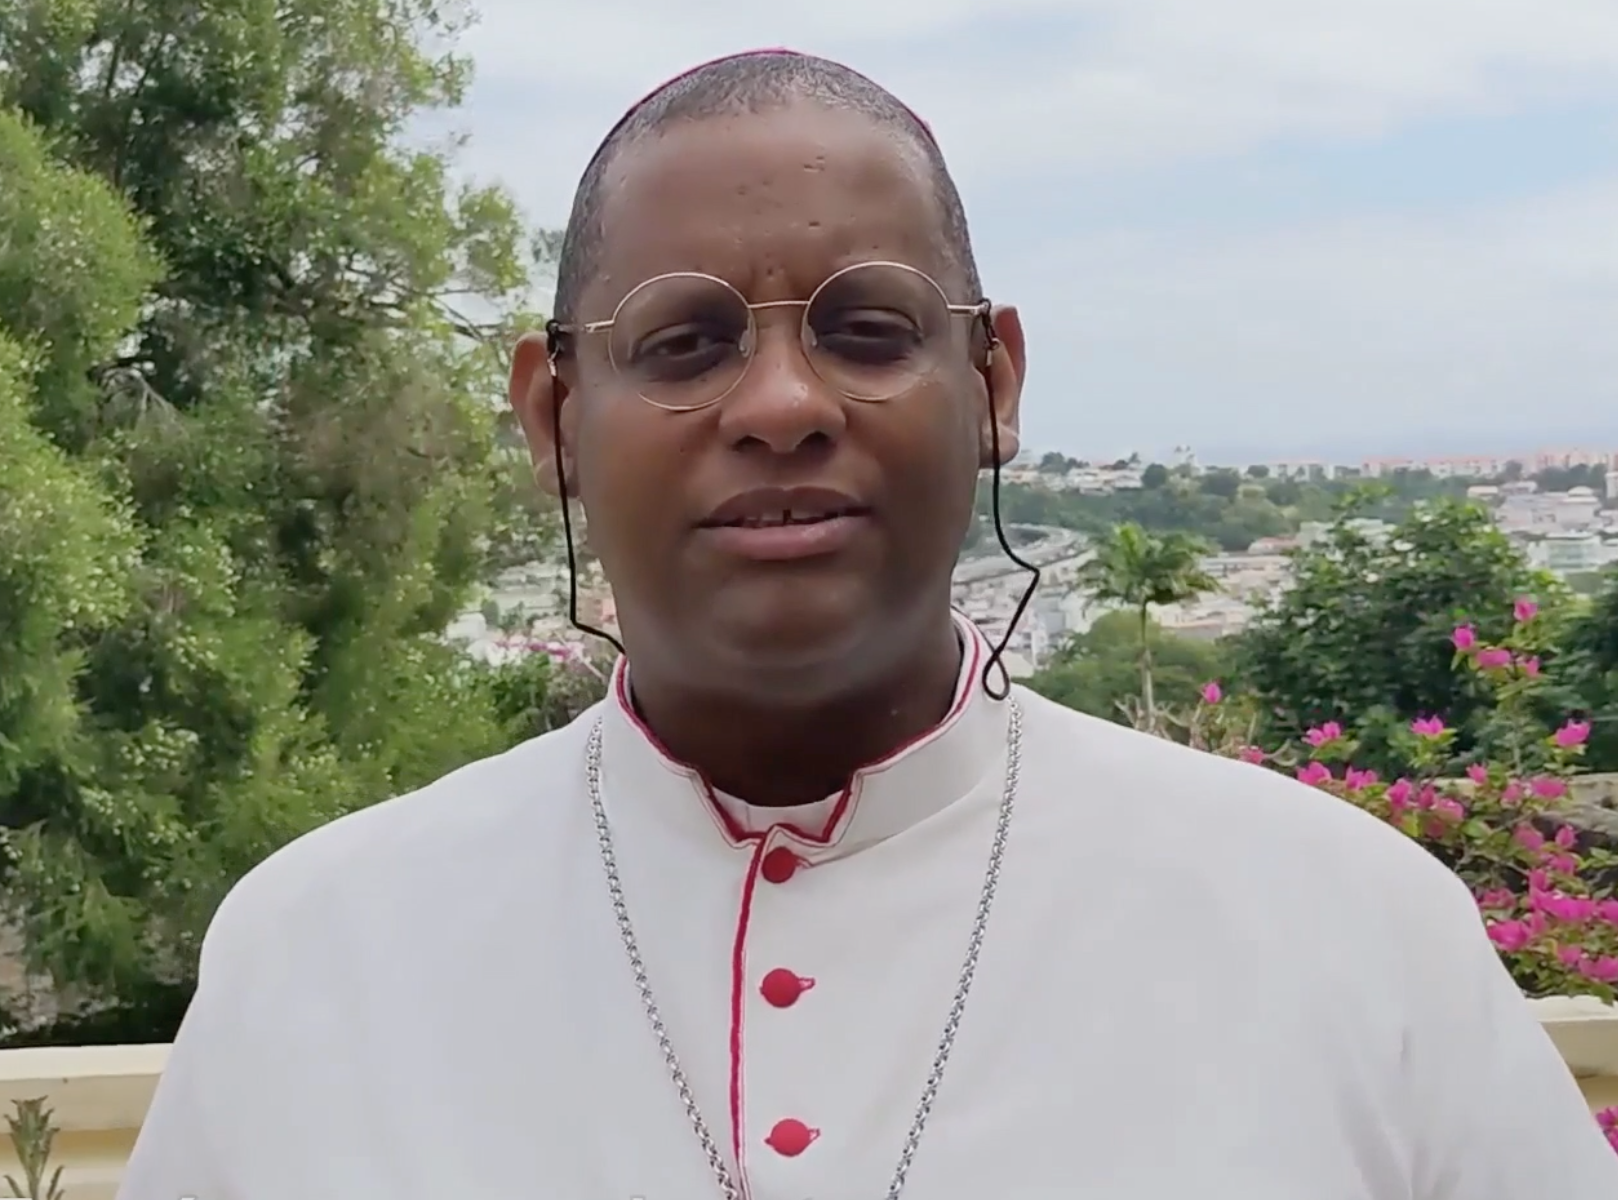     [VIDÉO] L'archevêque David Macaire exprime ses voeux pour 2022

